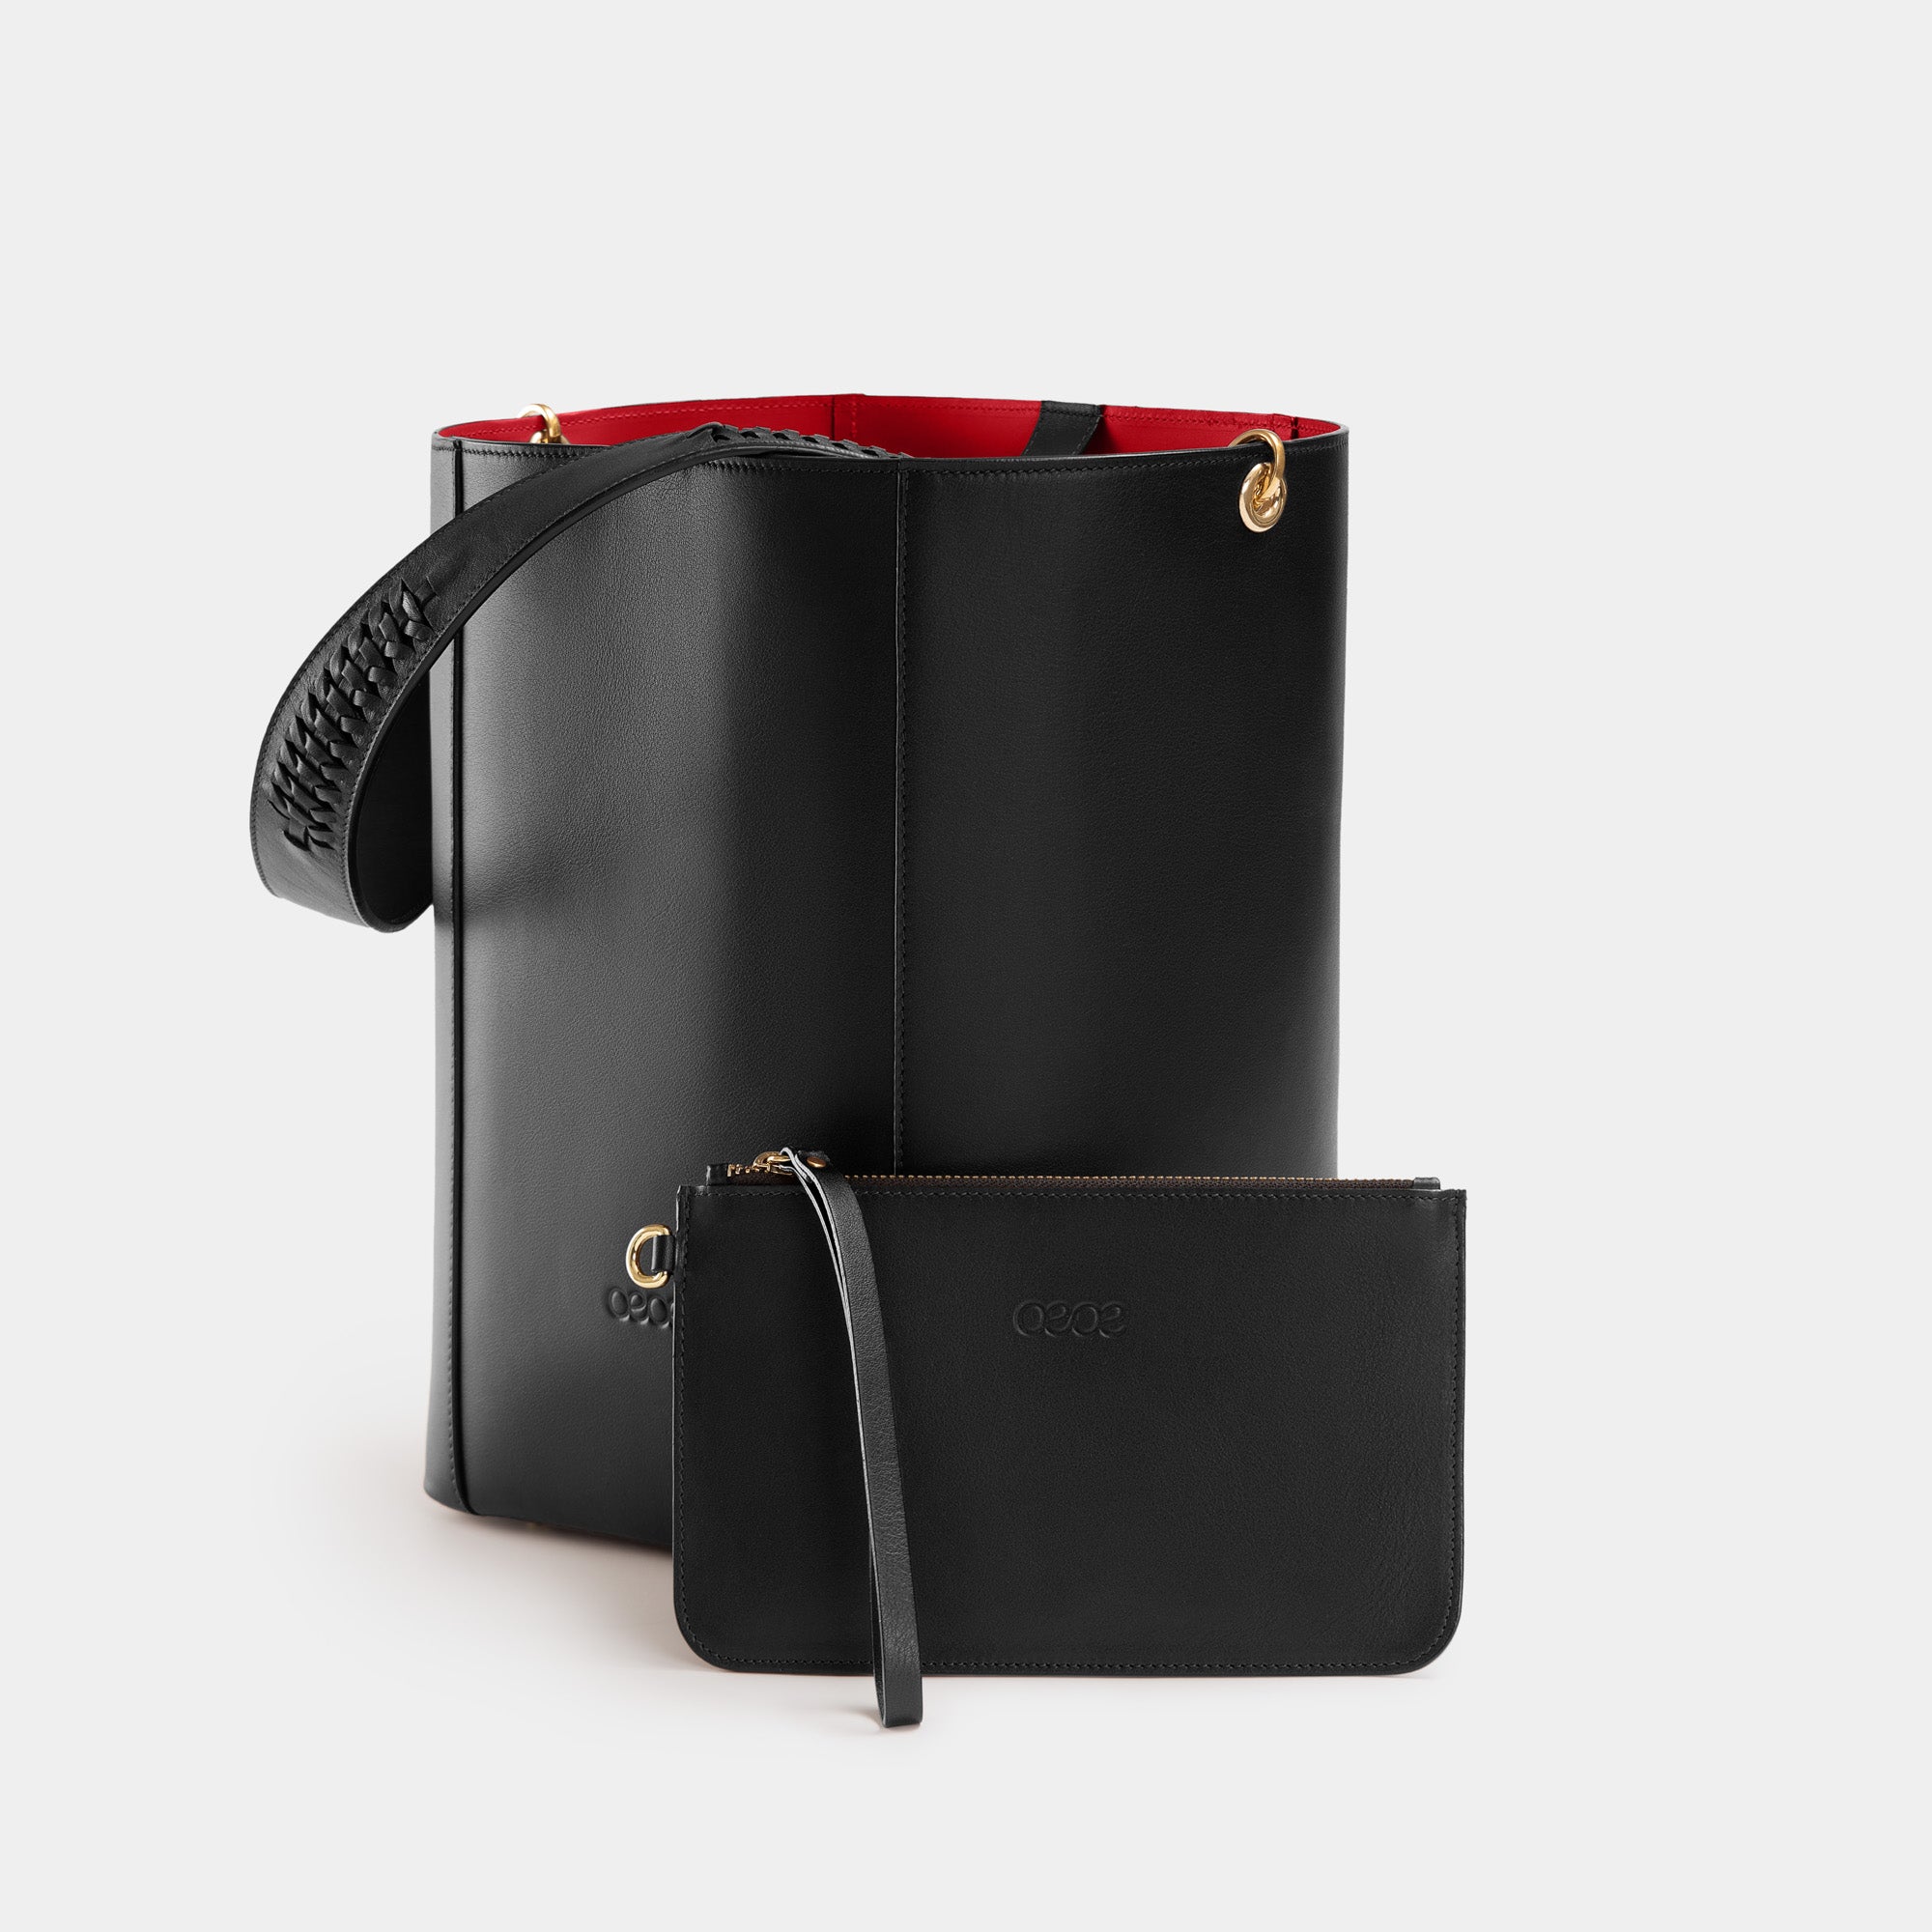 de piel negro - OEOE Handbags